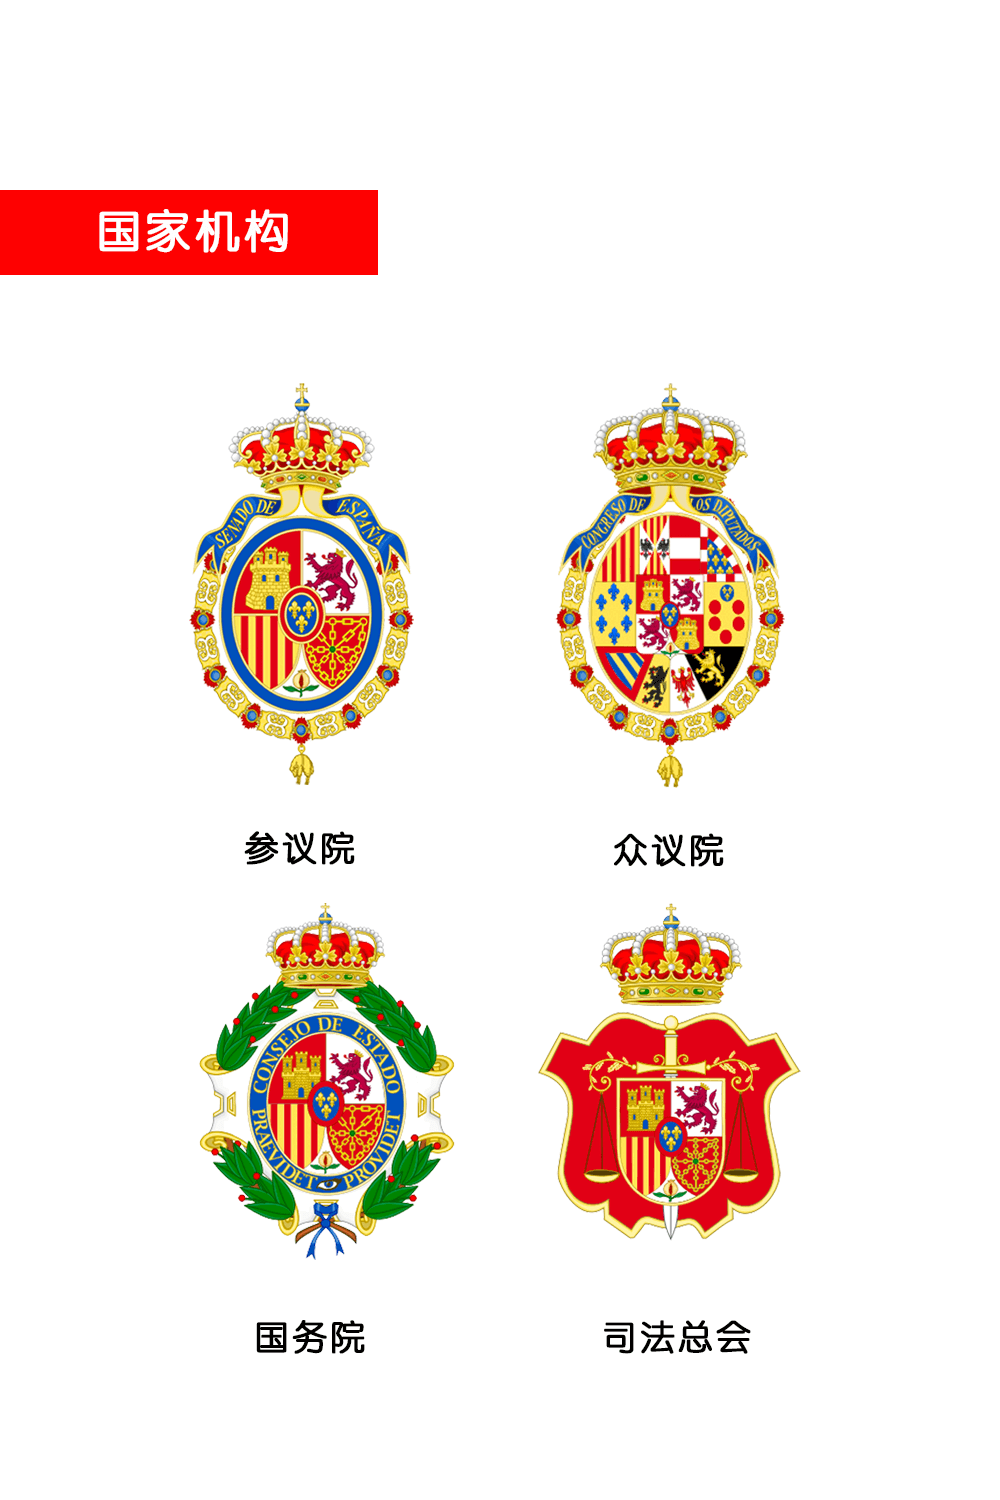 西班牙国徽中元素及意义 I 政府机构徽标(图3)